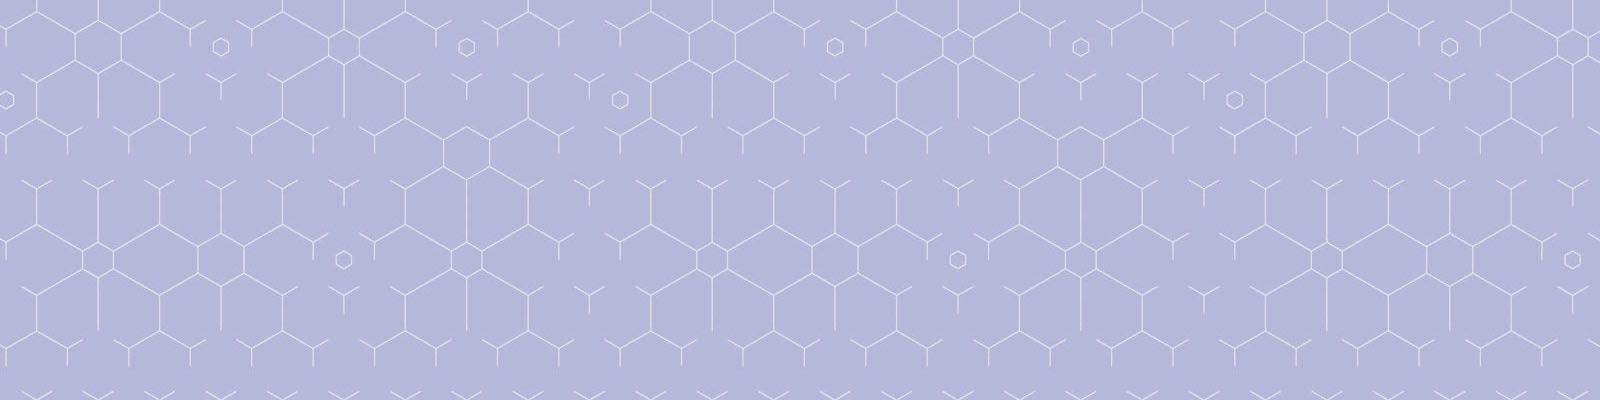 purple-hex-desktop